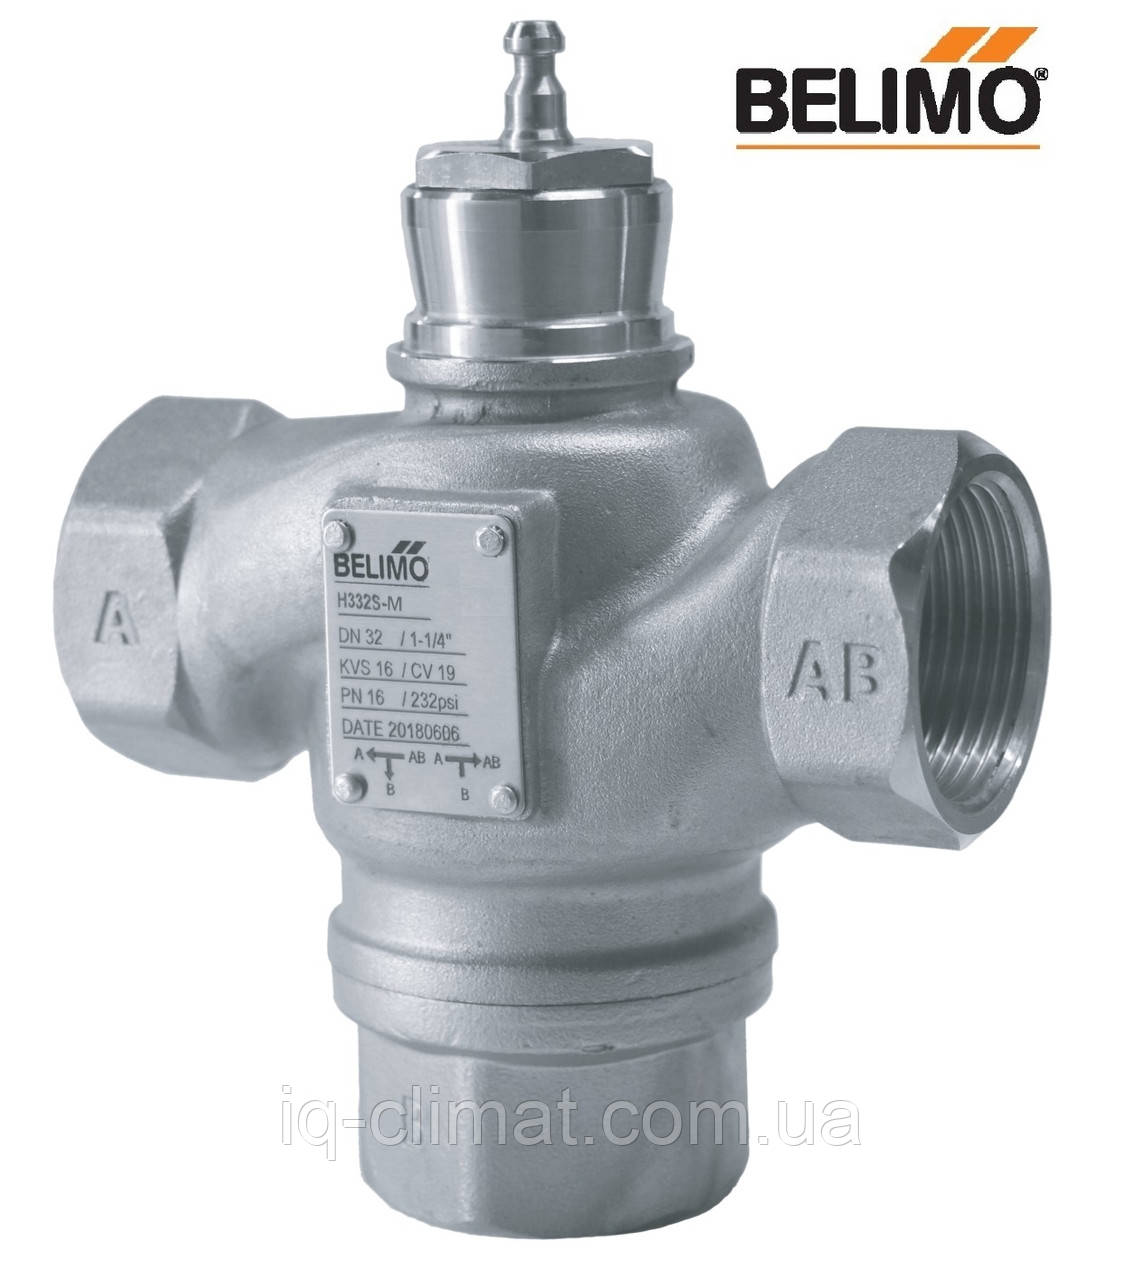 H332S-M триходовий клапан Belimo з нержавіючої сталі, внутрішня різьба DN32, kVs-16